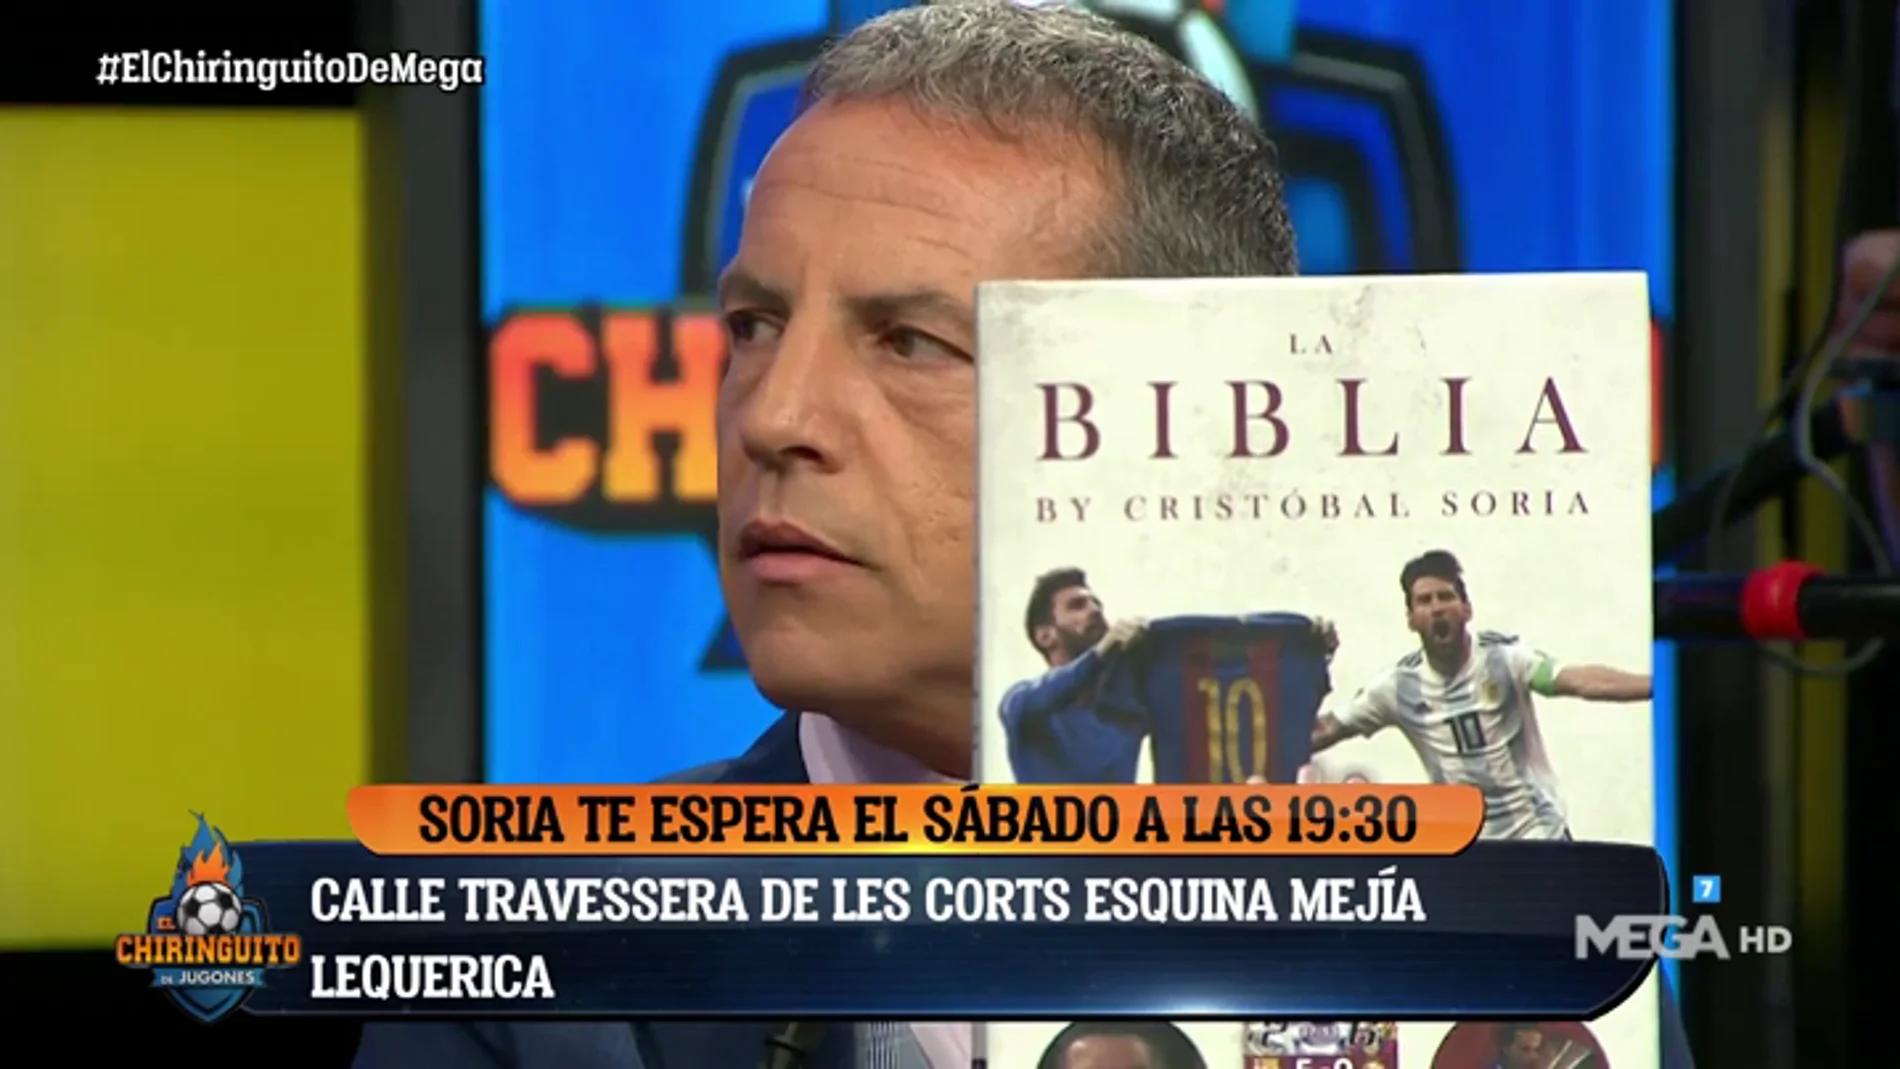 Cristóbal Soria: "Voy a llevar la 'Biblia' al templo de su Santidad y que la cosa fluya"